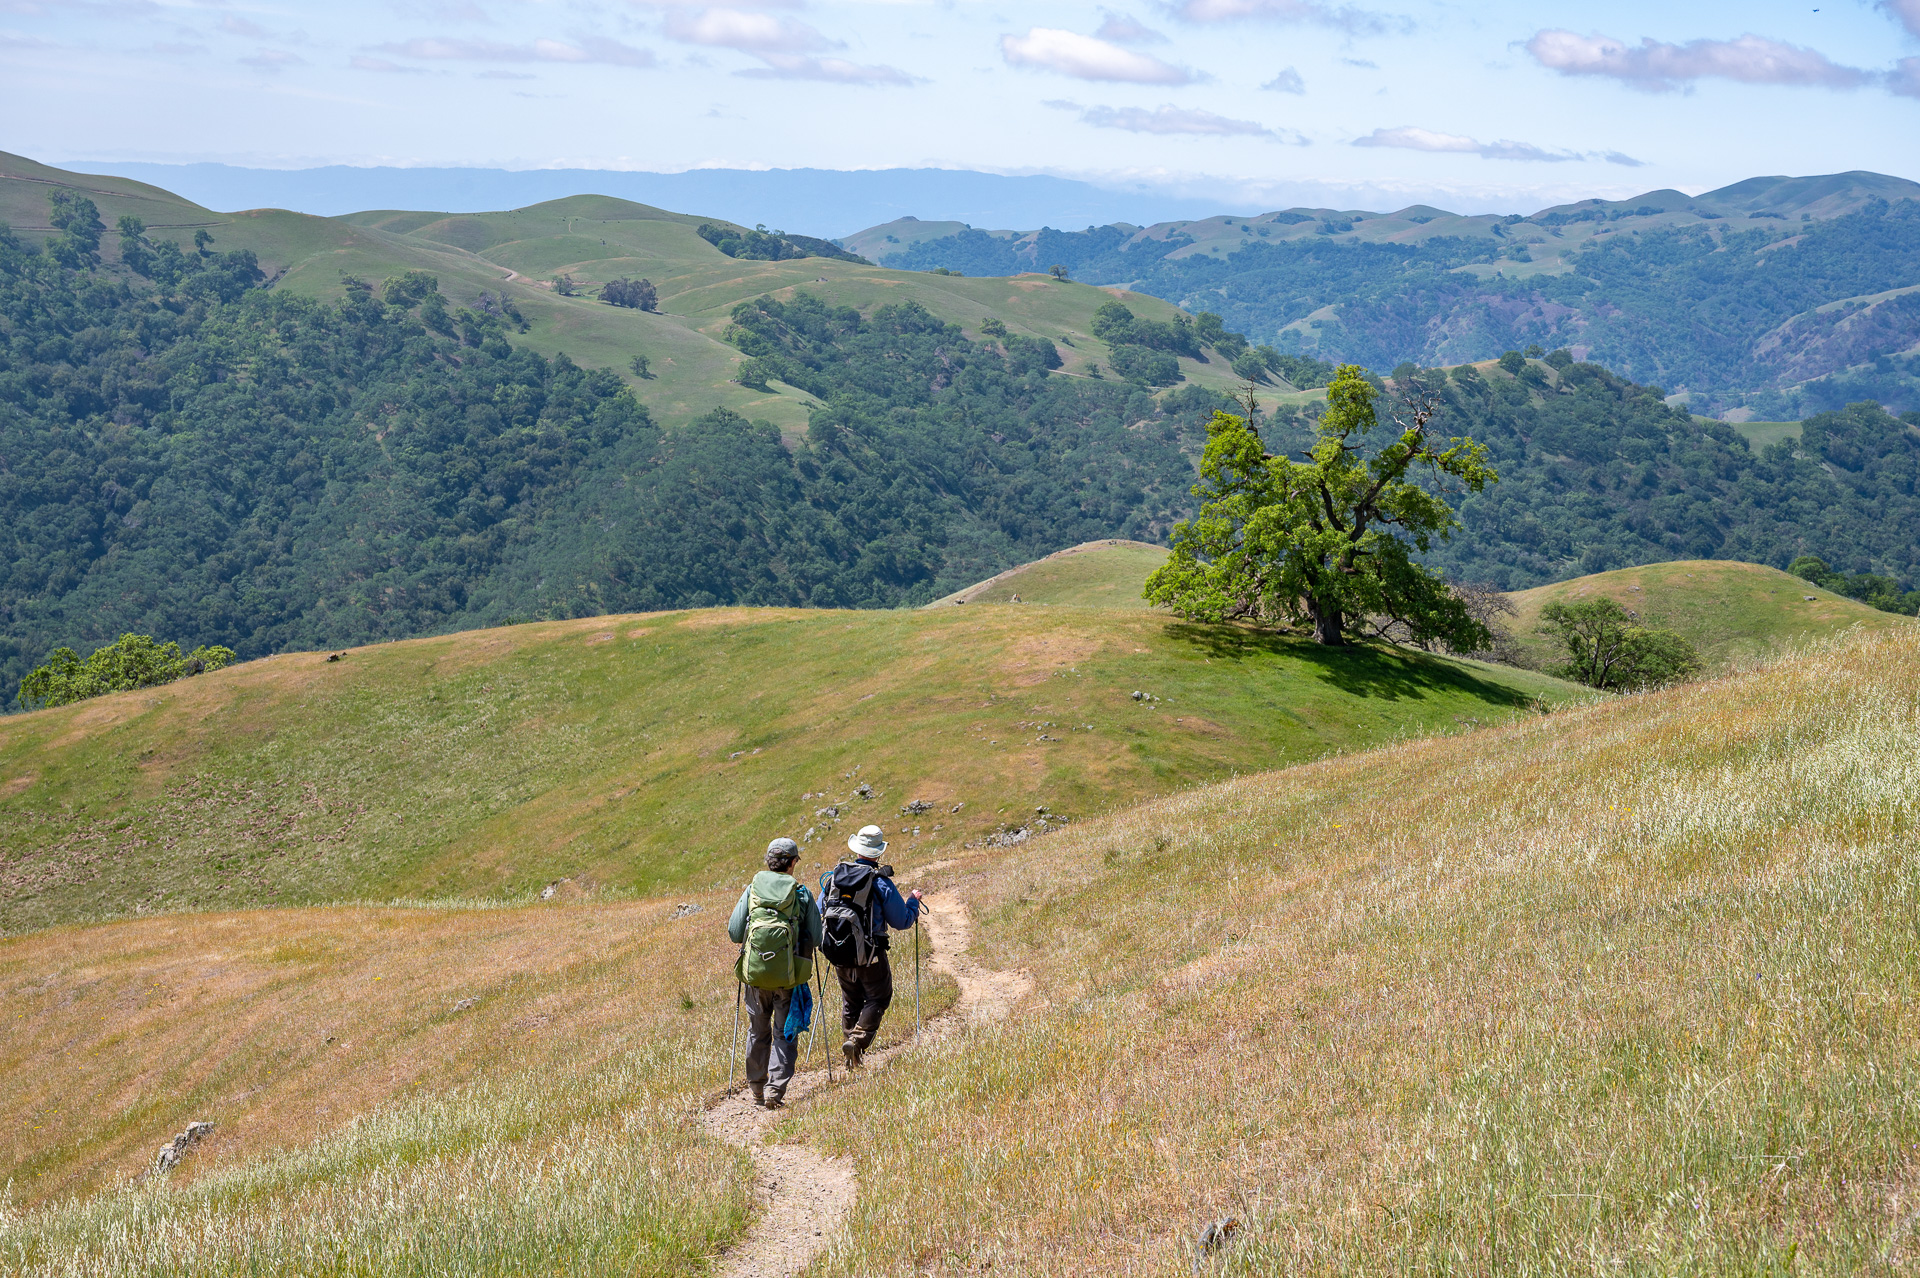 Two Hikers walking in the sunol regional wildernesss